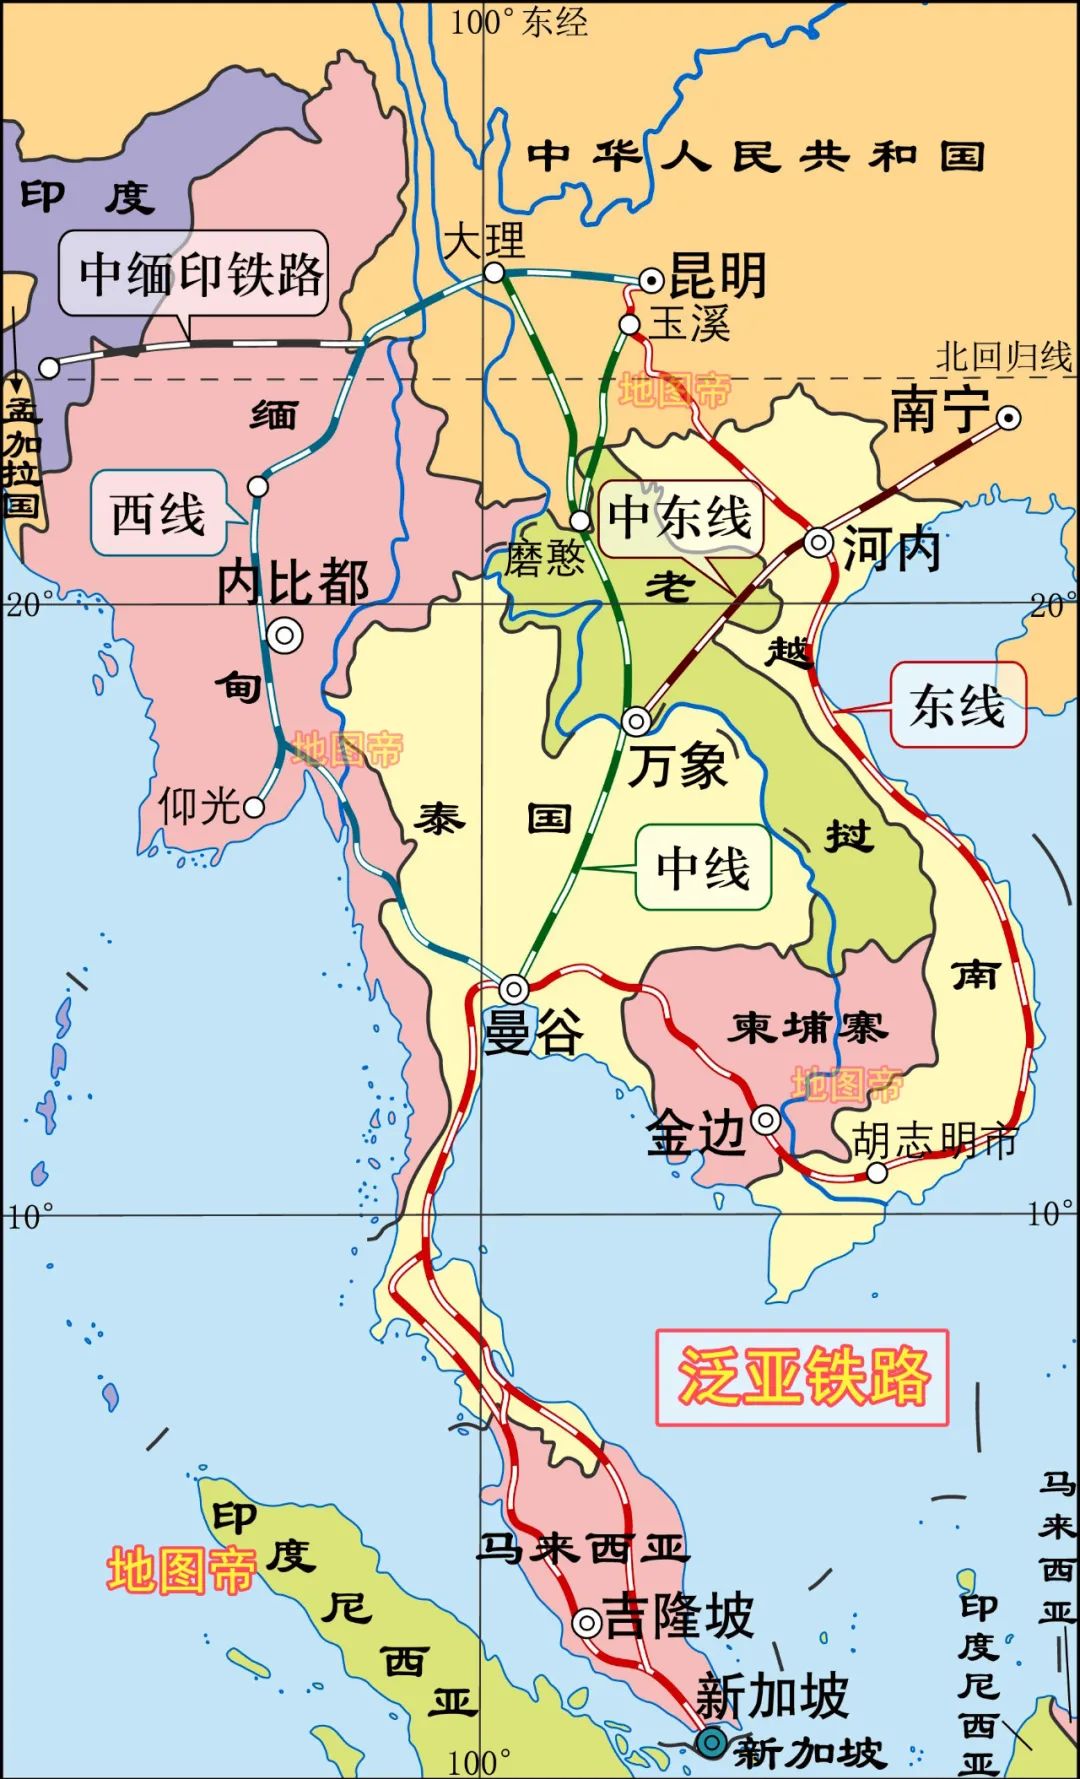 西线,起点云南昆明,经过大理至缅甸内比都,仰光,折向东来到泰国曼谷